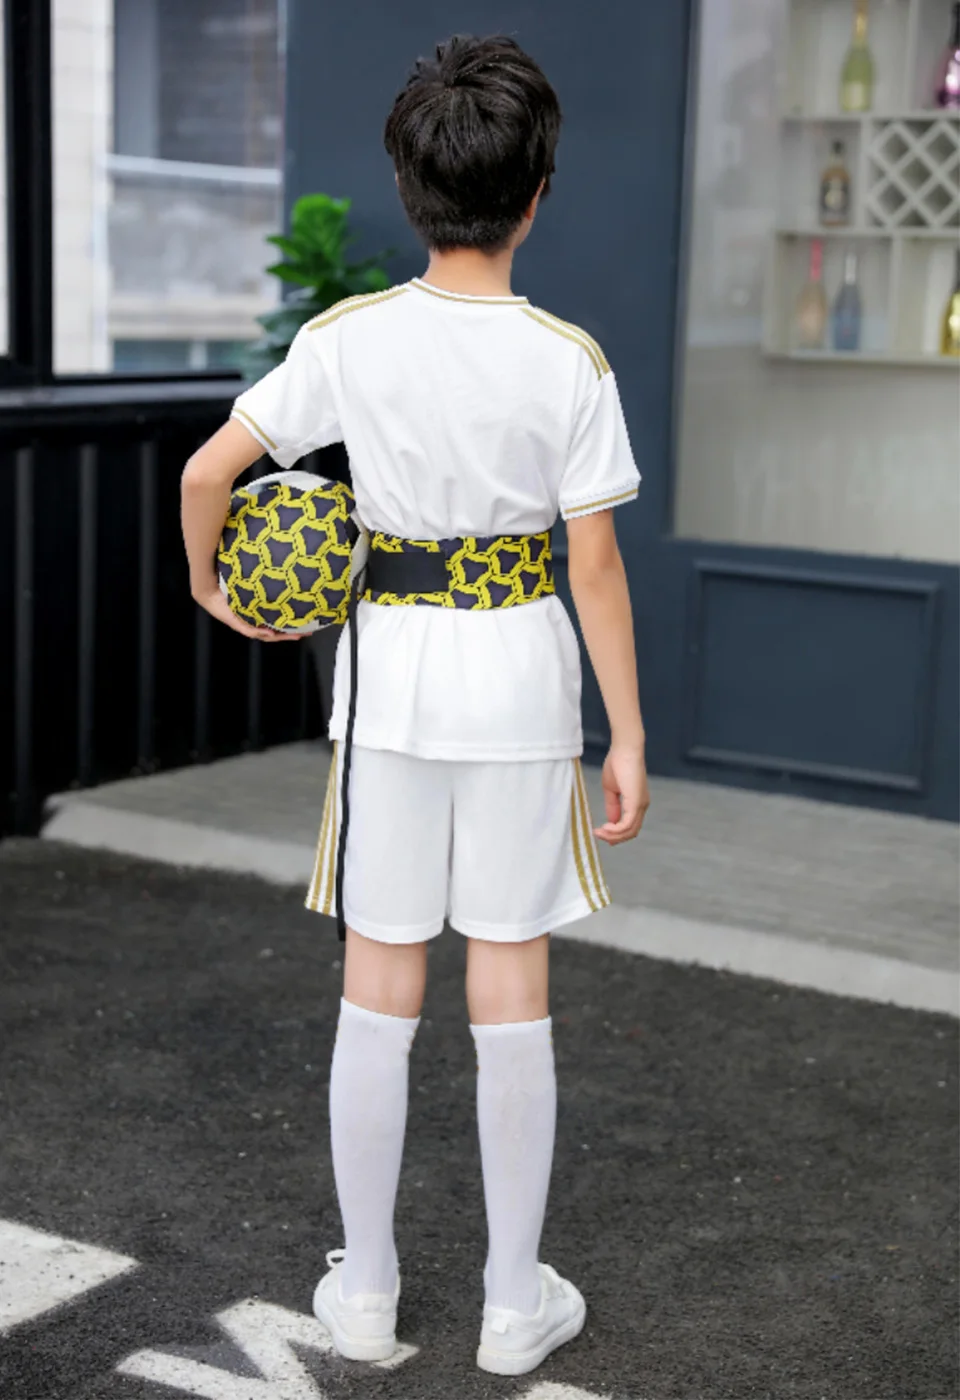 Футбольный мяч джеггл сумки Детский вспомогательный ремень для велосипедного спорта дети тренировочное оборудование для футбола Kick Solo футбольный тренажер футбол Kick